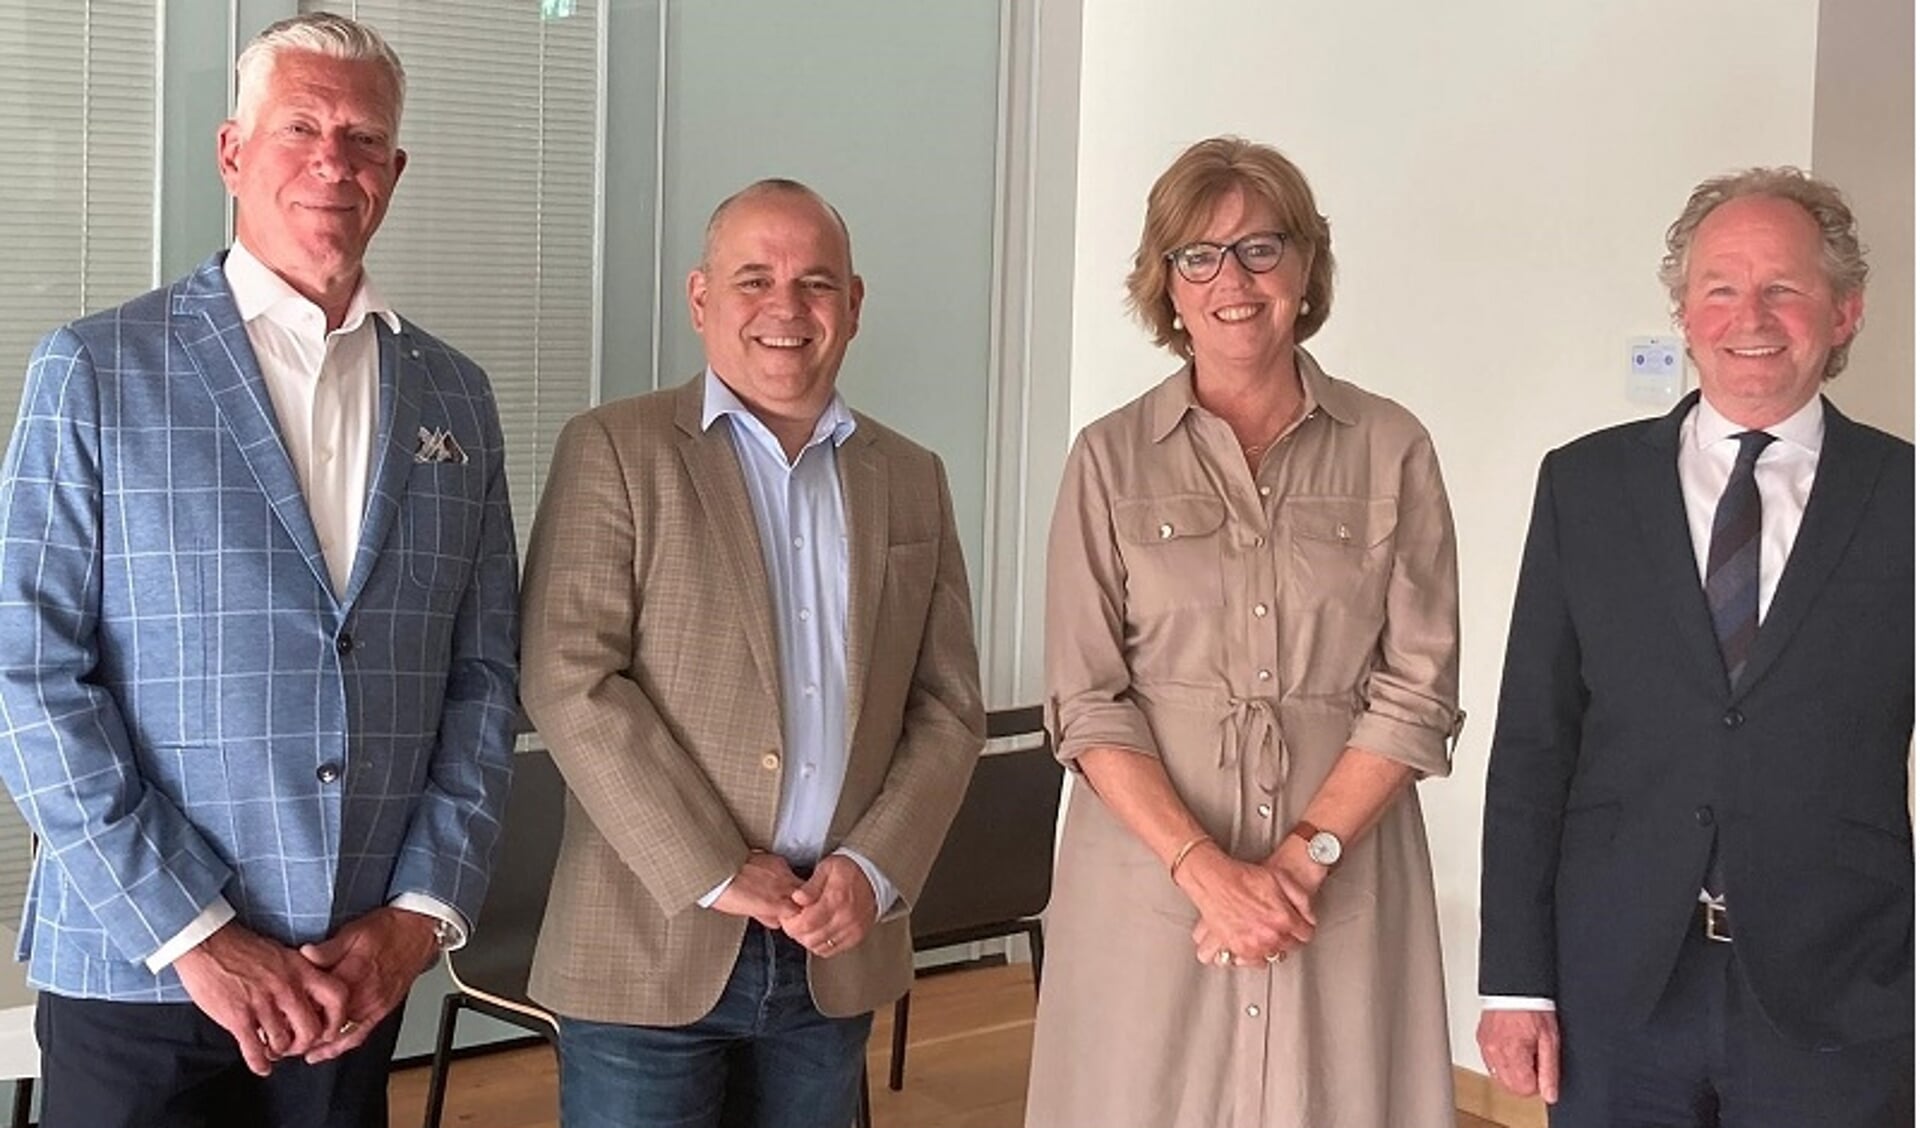 De nieuwe wethouders van Albasserdam. Van links naar rechtd: Freek de Gier (VVD), Ramon Pardo Kruidenier (D66), Margreet de Deugd (CDA) en Marten Japenga (ChristenUnie). (foto: gemeente Alblasserdam) 